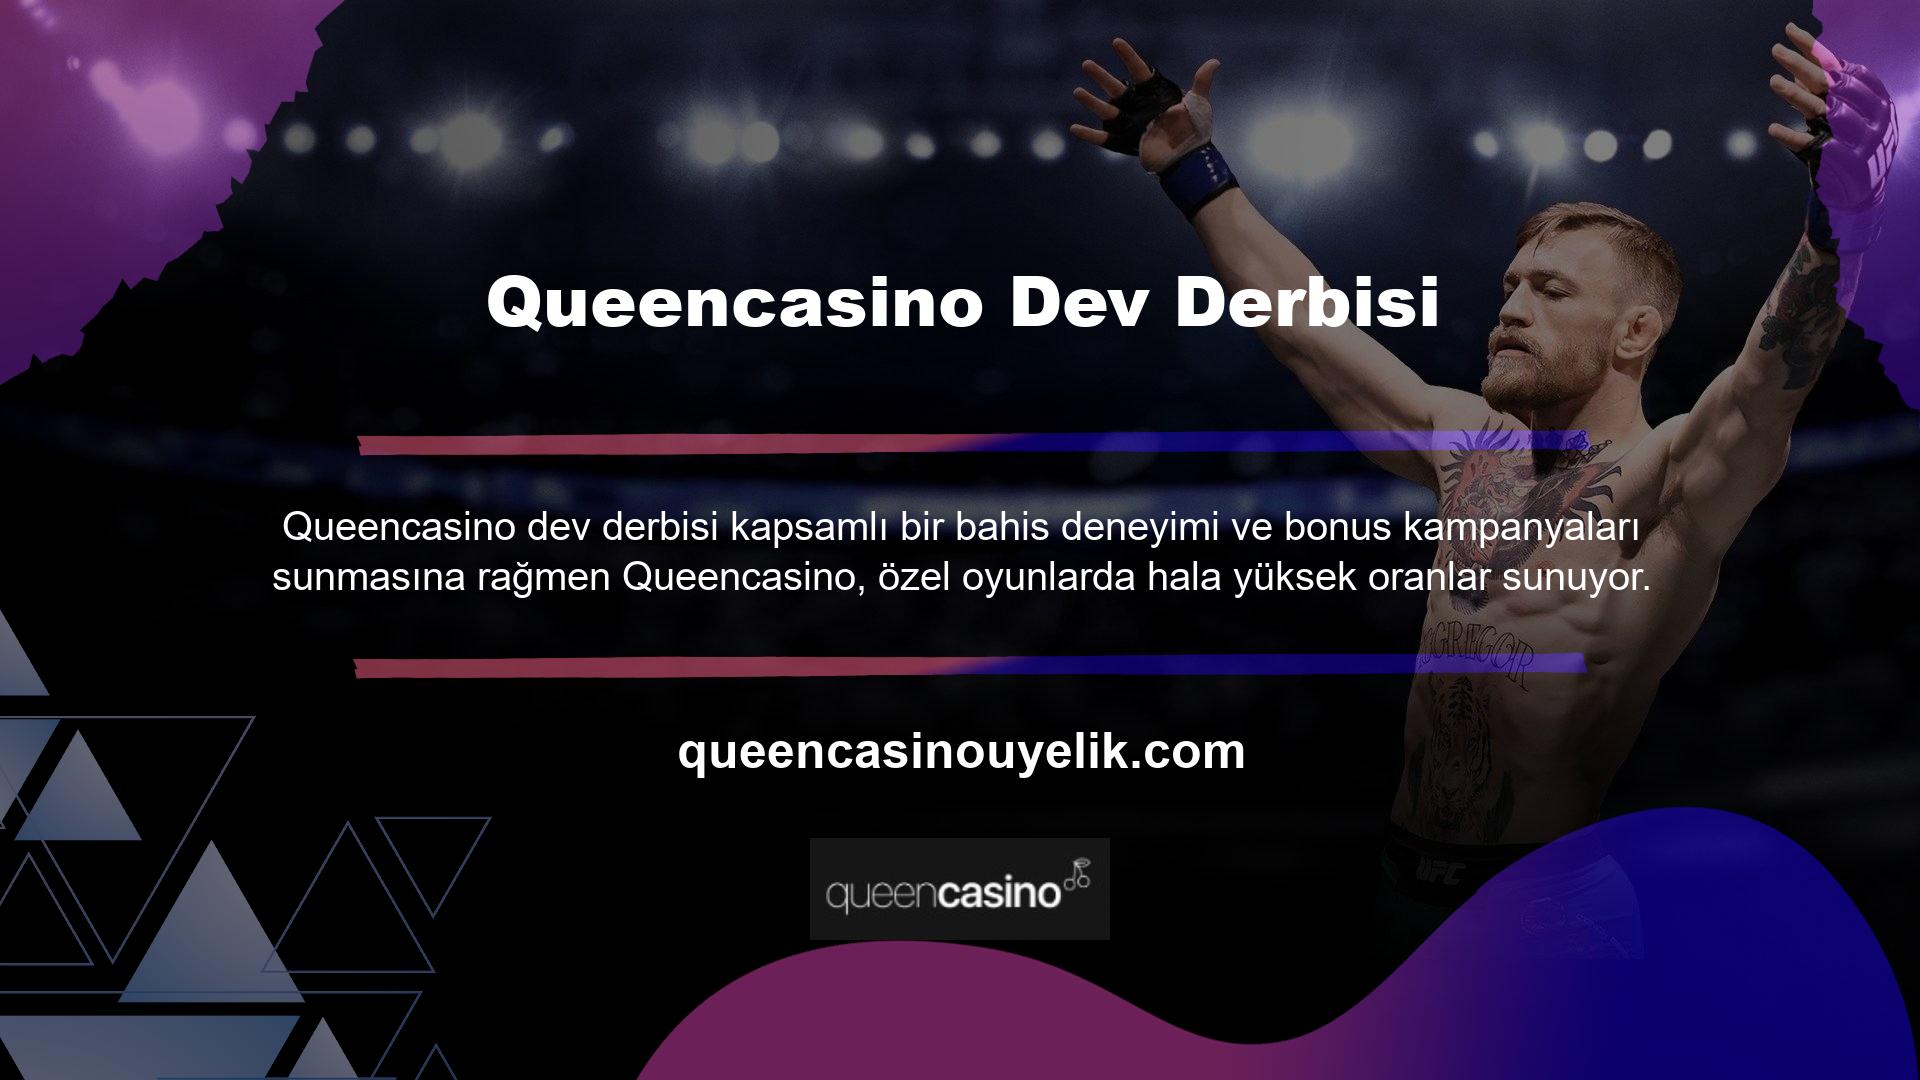 Queencasino giriş ödülleri sayfası, çeşitli oyun kategorilerinde çok sayıda teklifi ortaya koyuyor